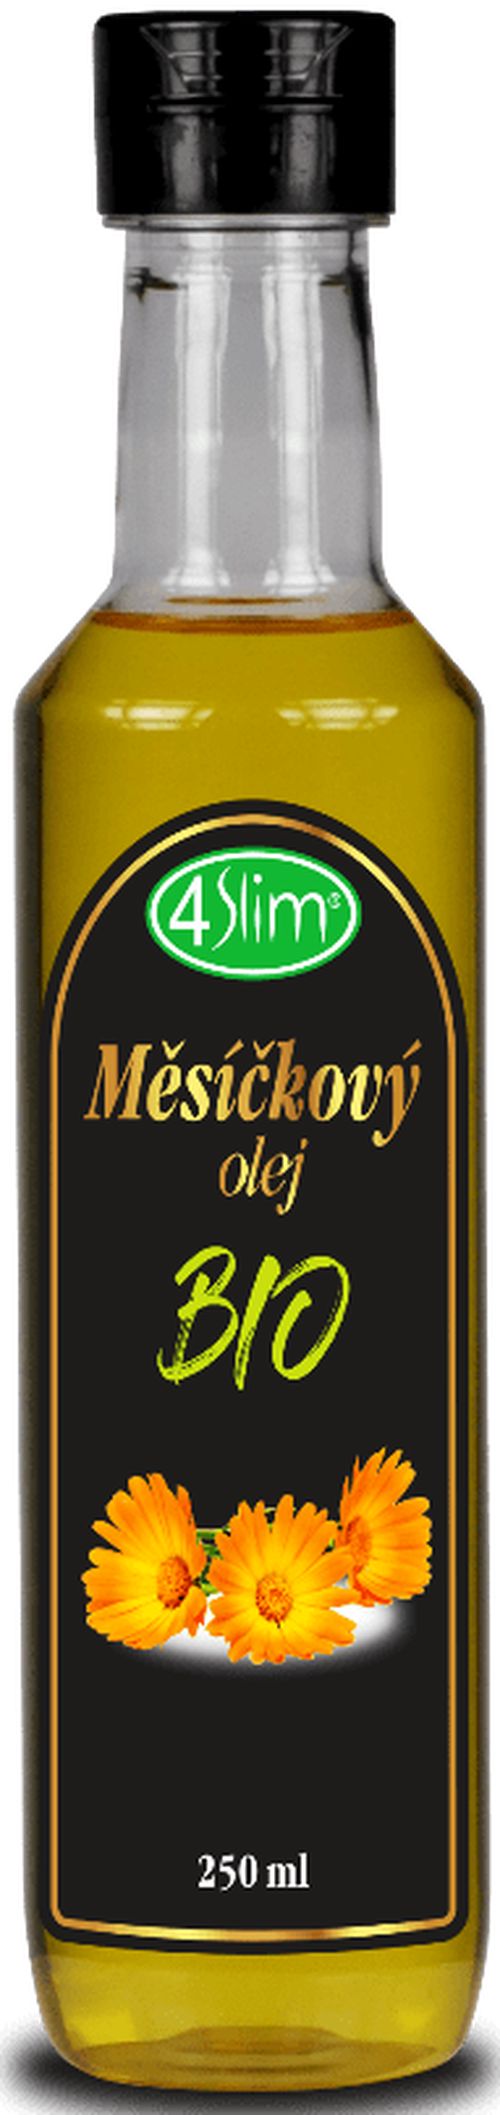 4Slim - Nechtíkový olej BIO, 250 ml